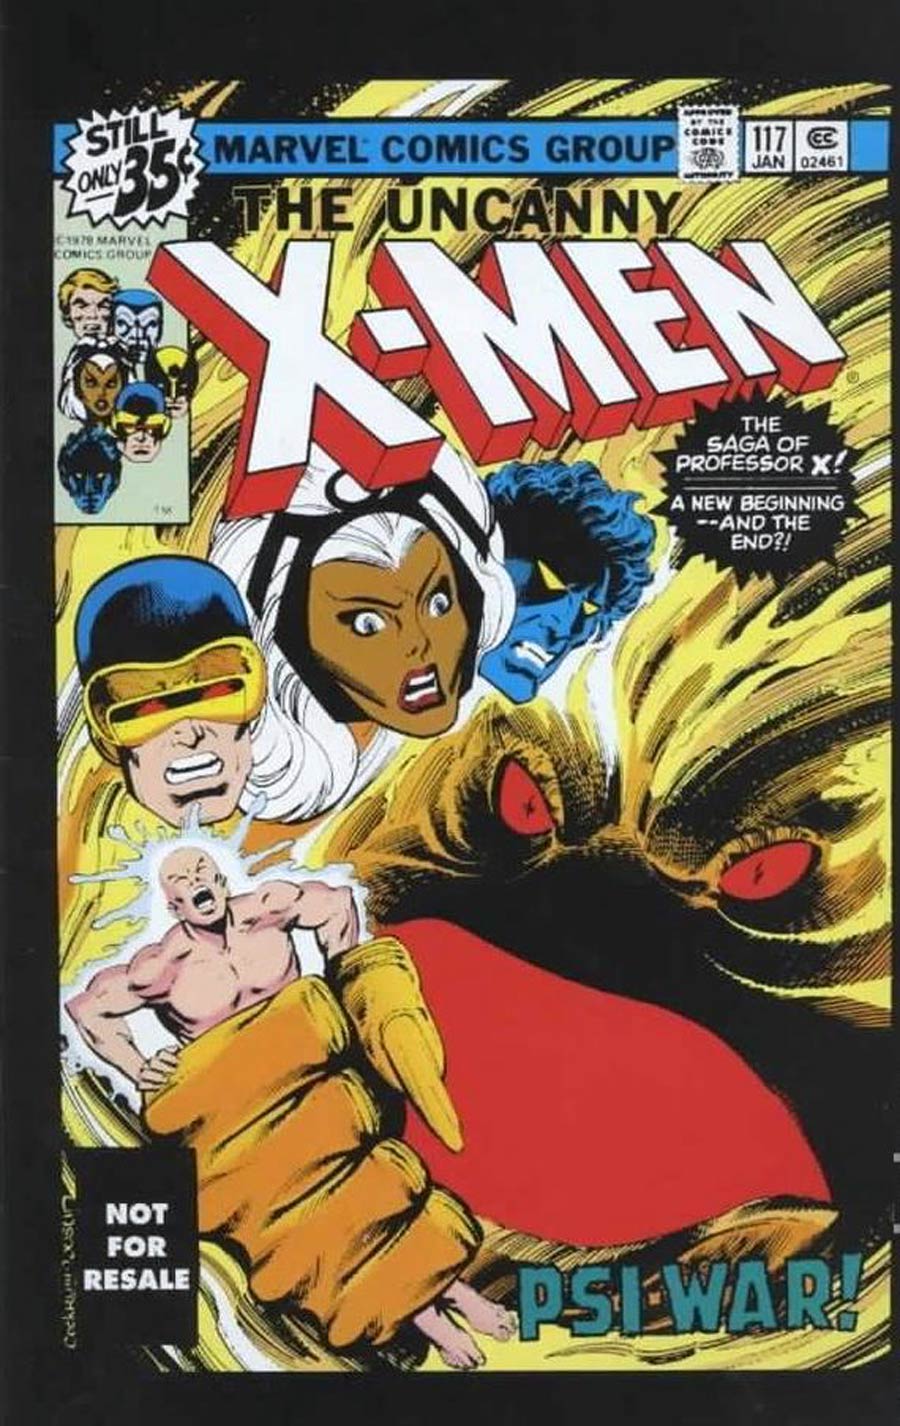 X-Men Vol 1 #117 Cover B Toy Reprint